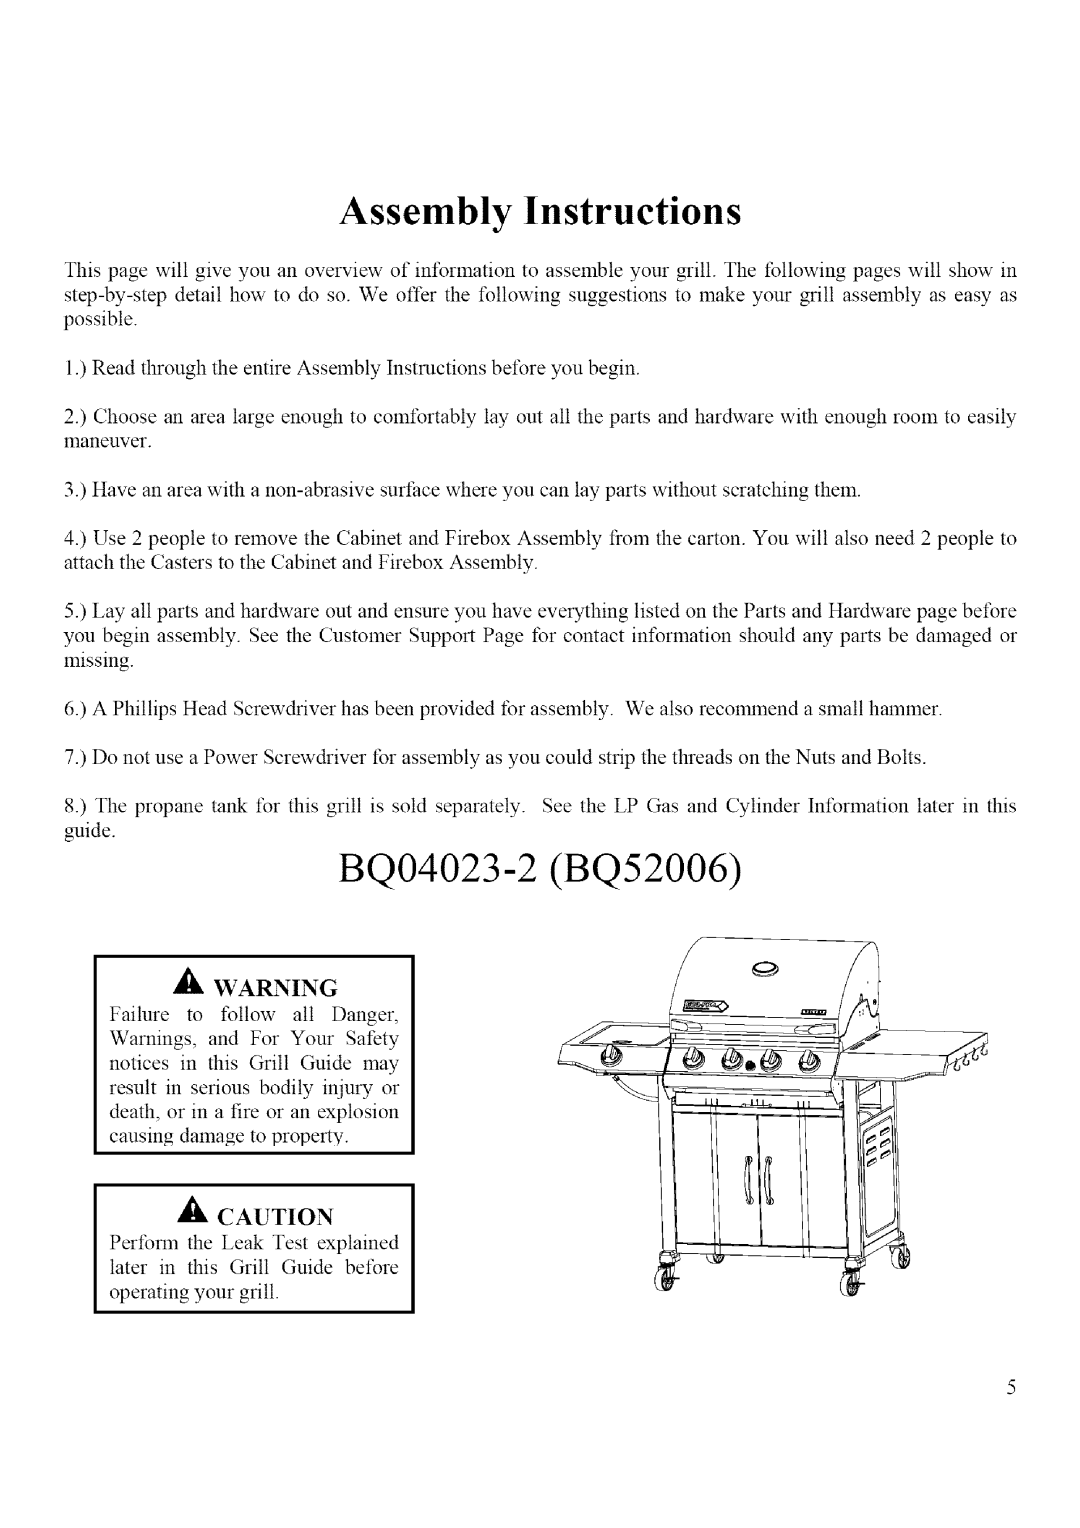 BBQ Pro BQ04023-2, BQ52006 manual Assembly Instructions 